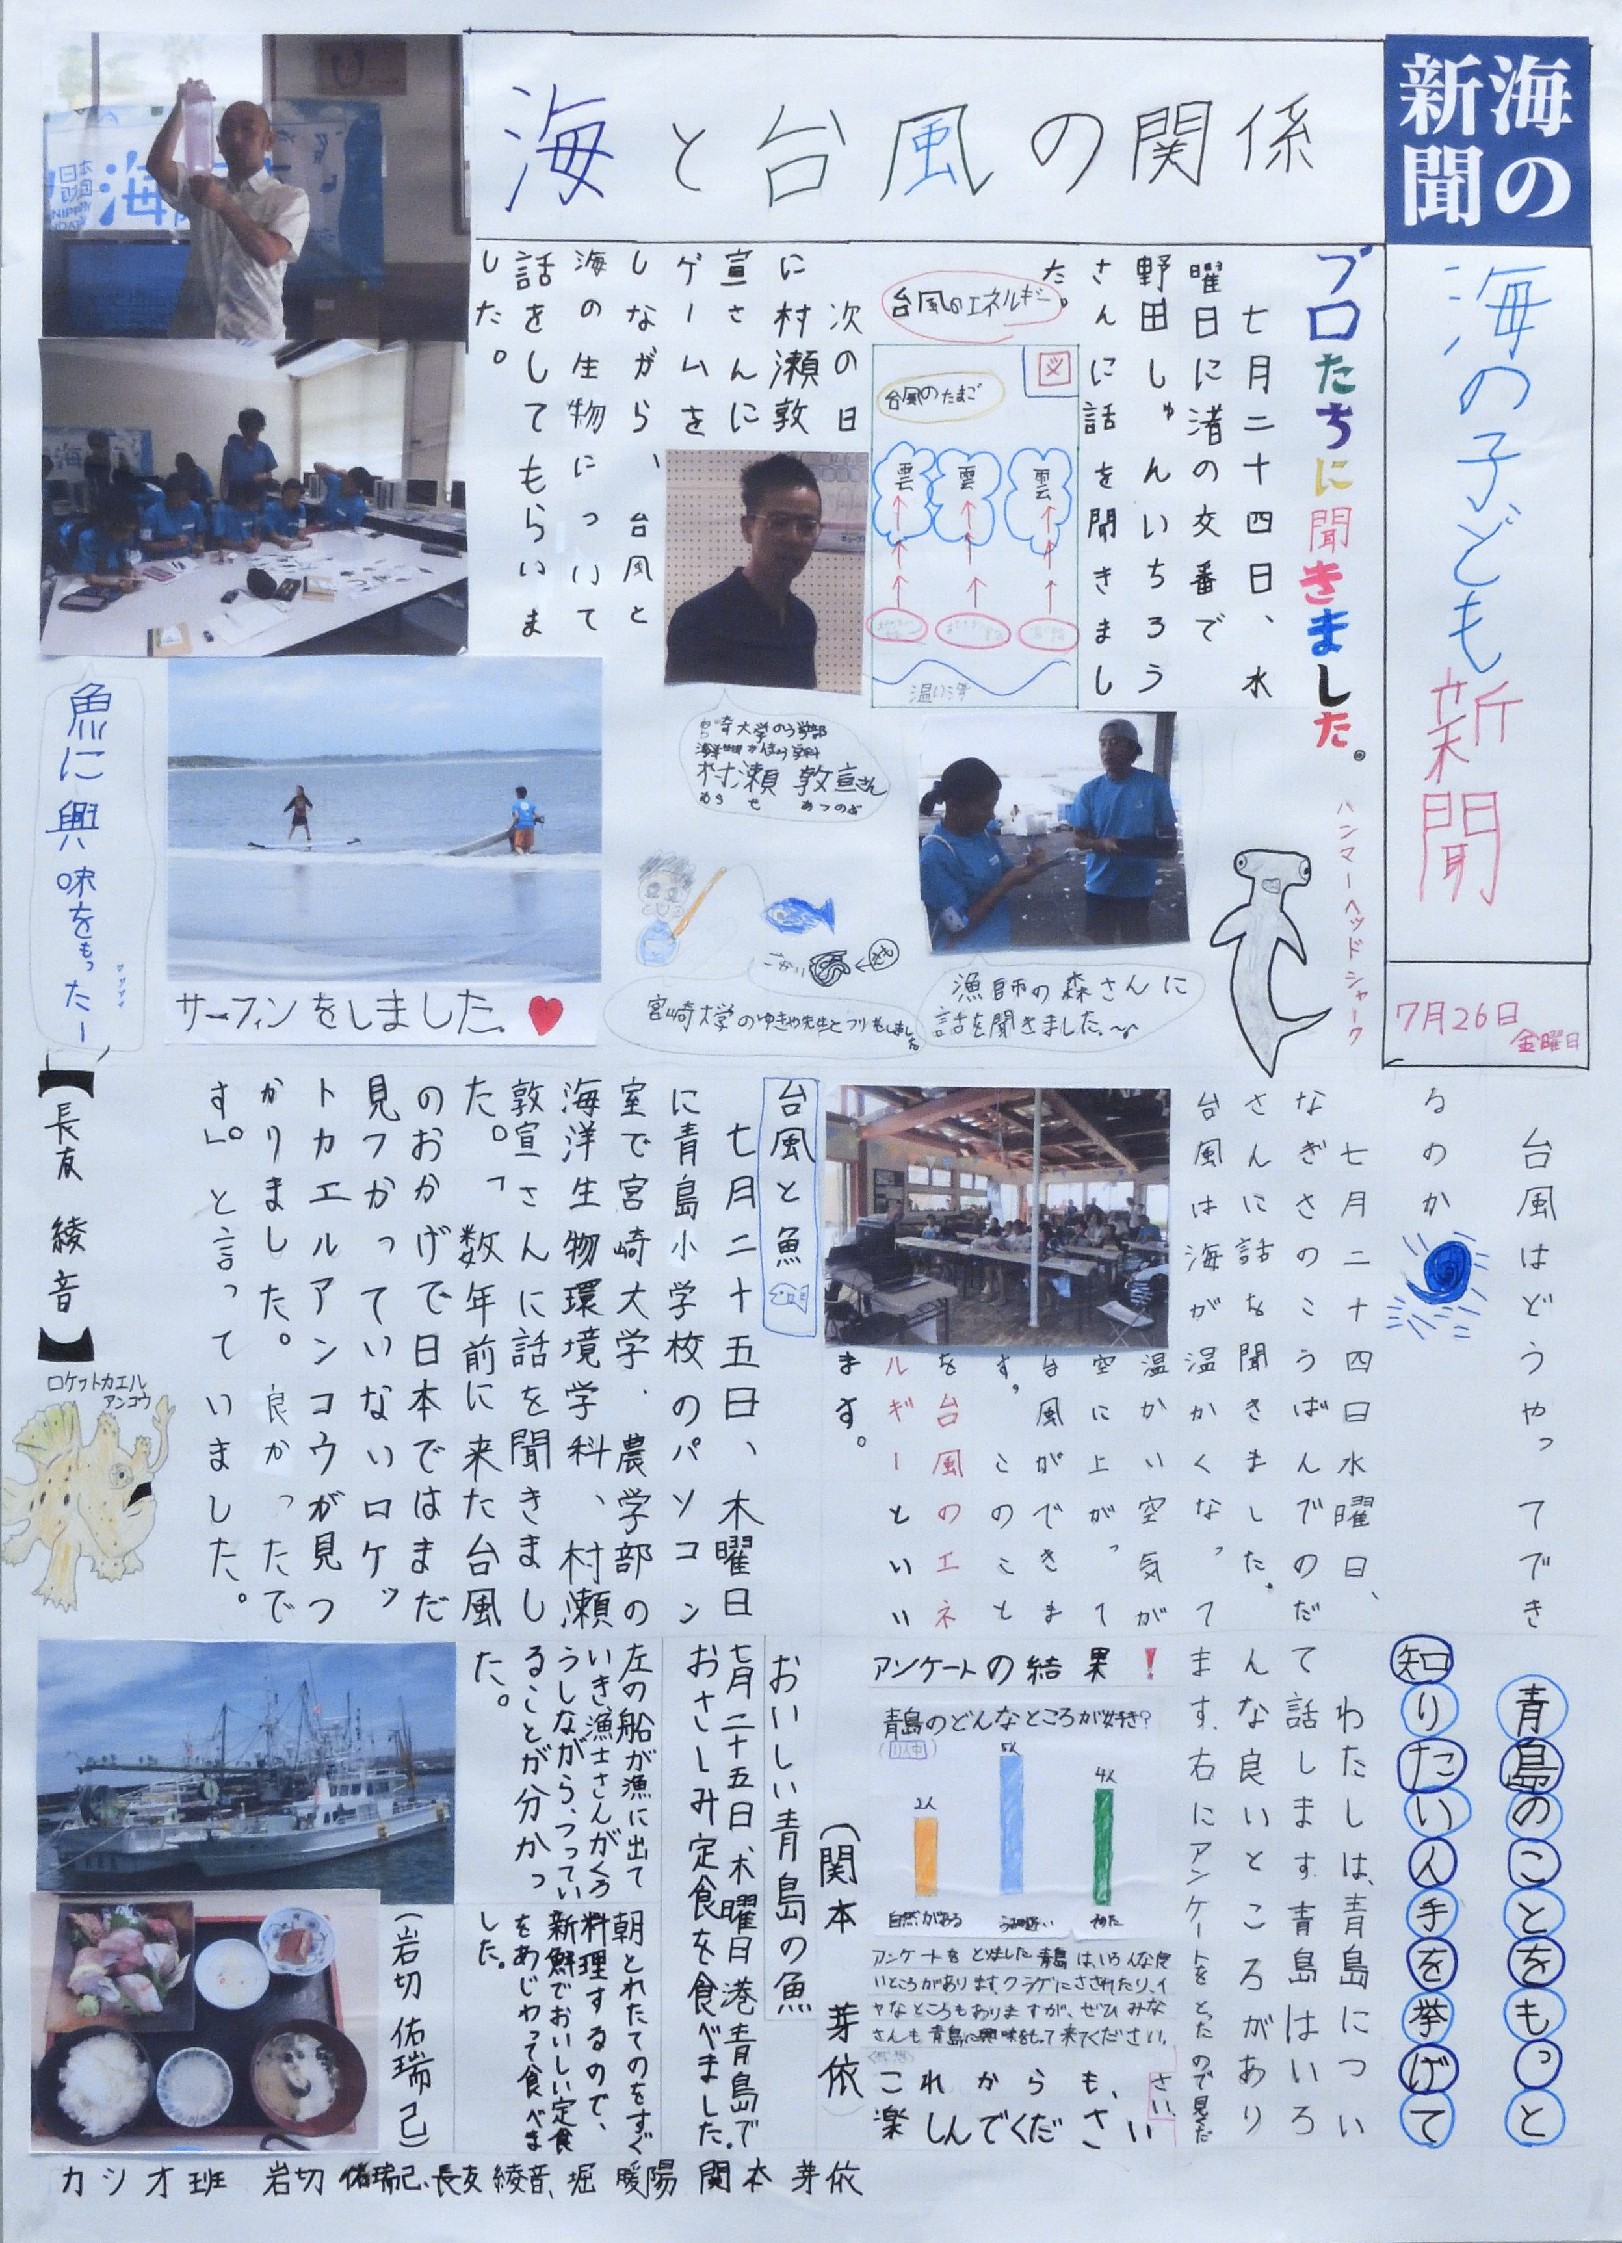 海で起こる謎をスクープ 台風から私たちが学ぶこと 海と日本project In みやざき